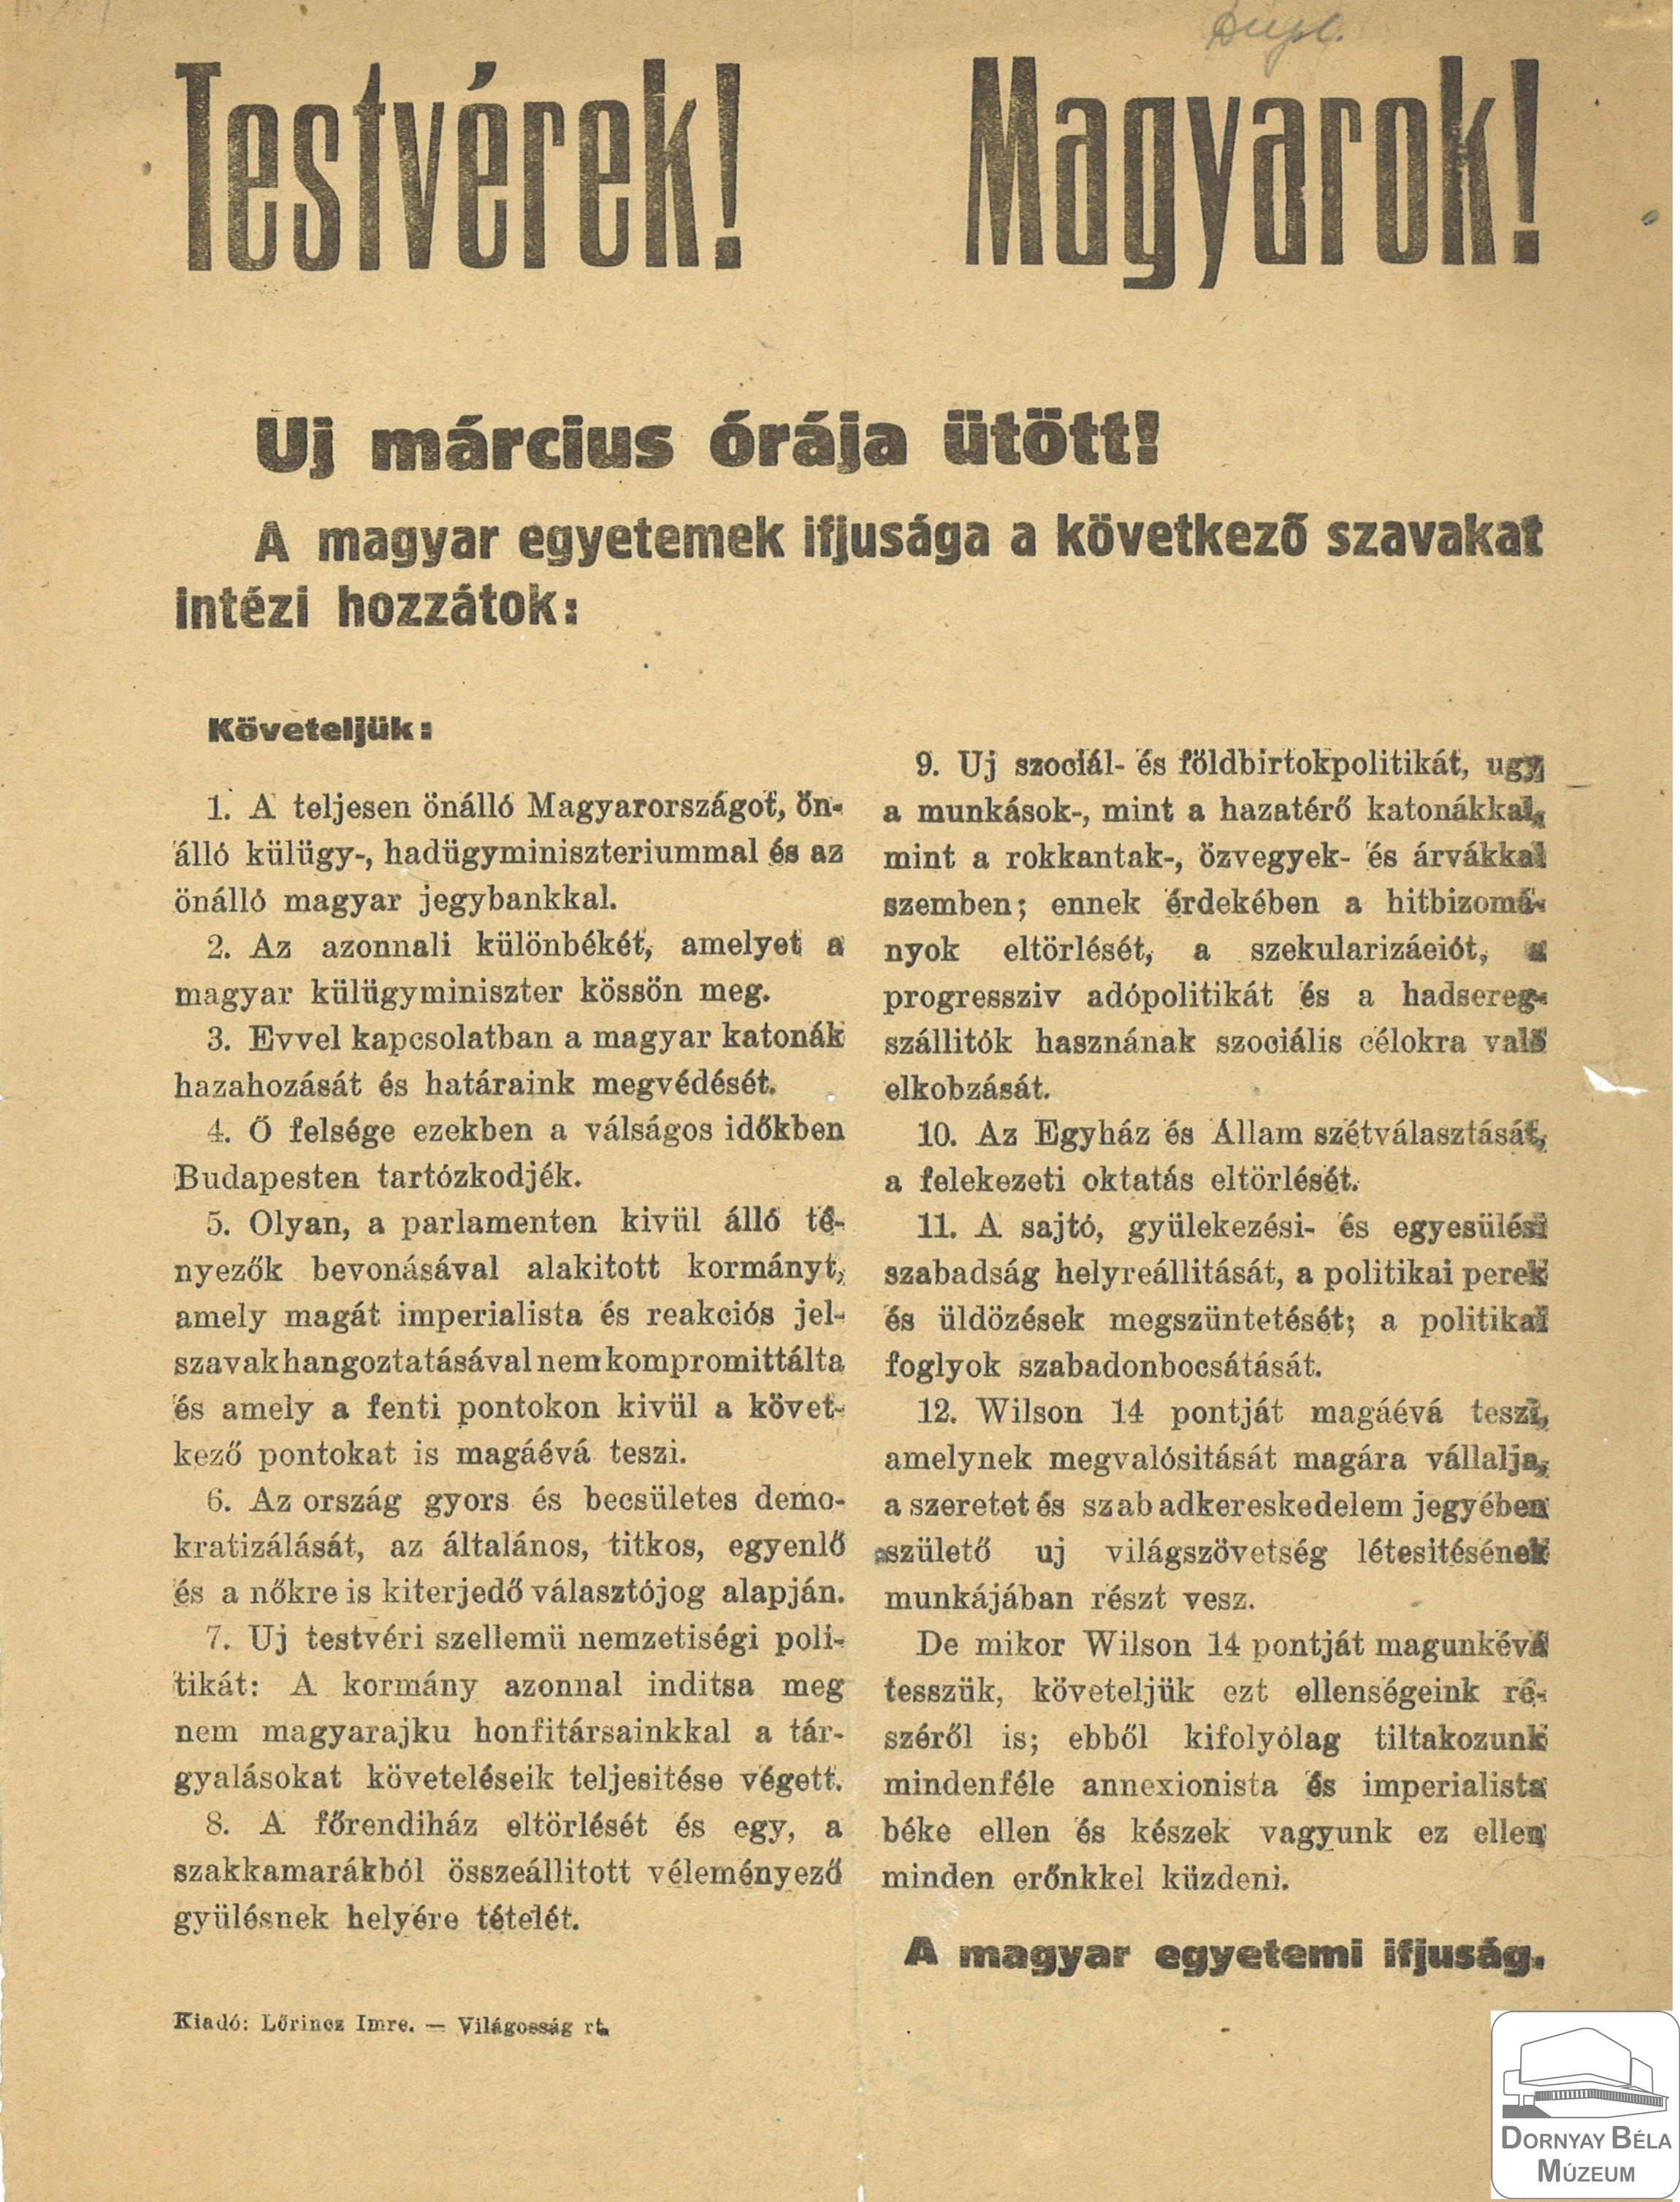 A magyar egyetemi ifjúság felhívása (Dornyay Béla Múzeum, Salgótarján CC BY-NC-SA)